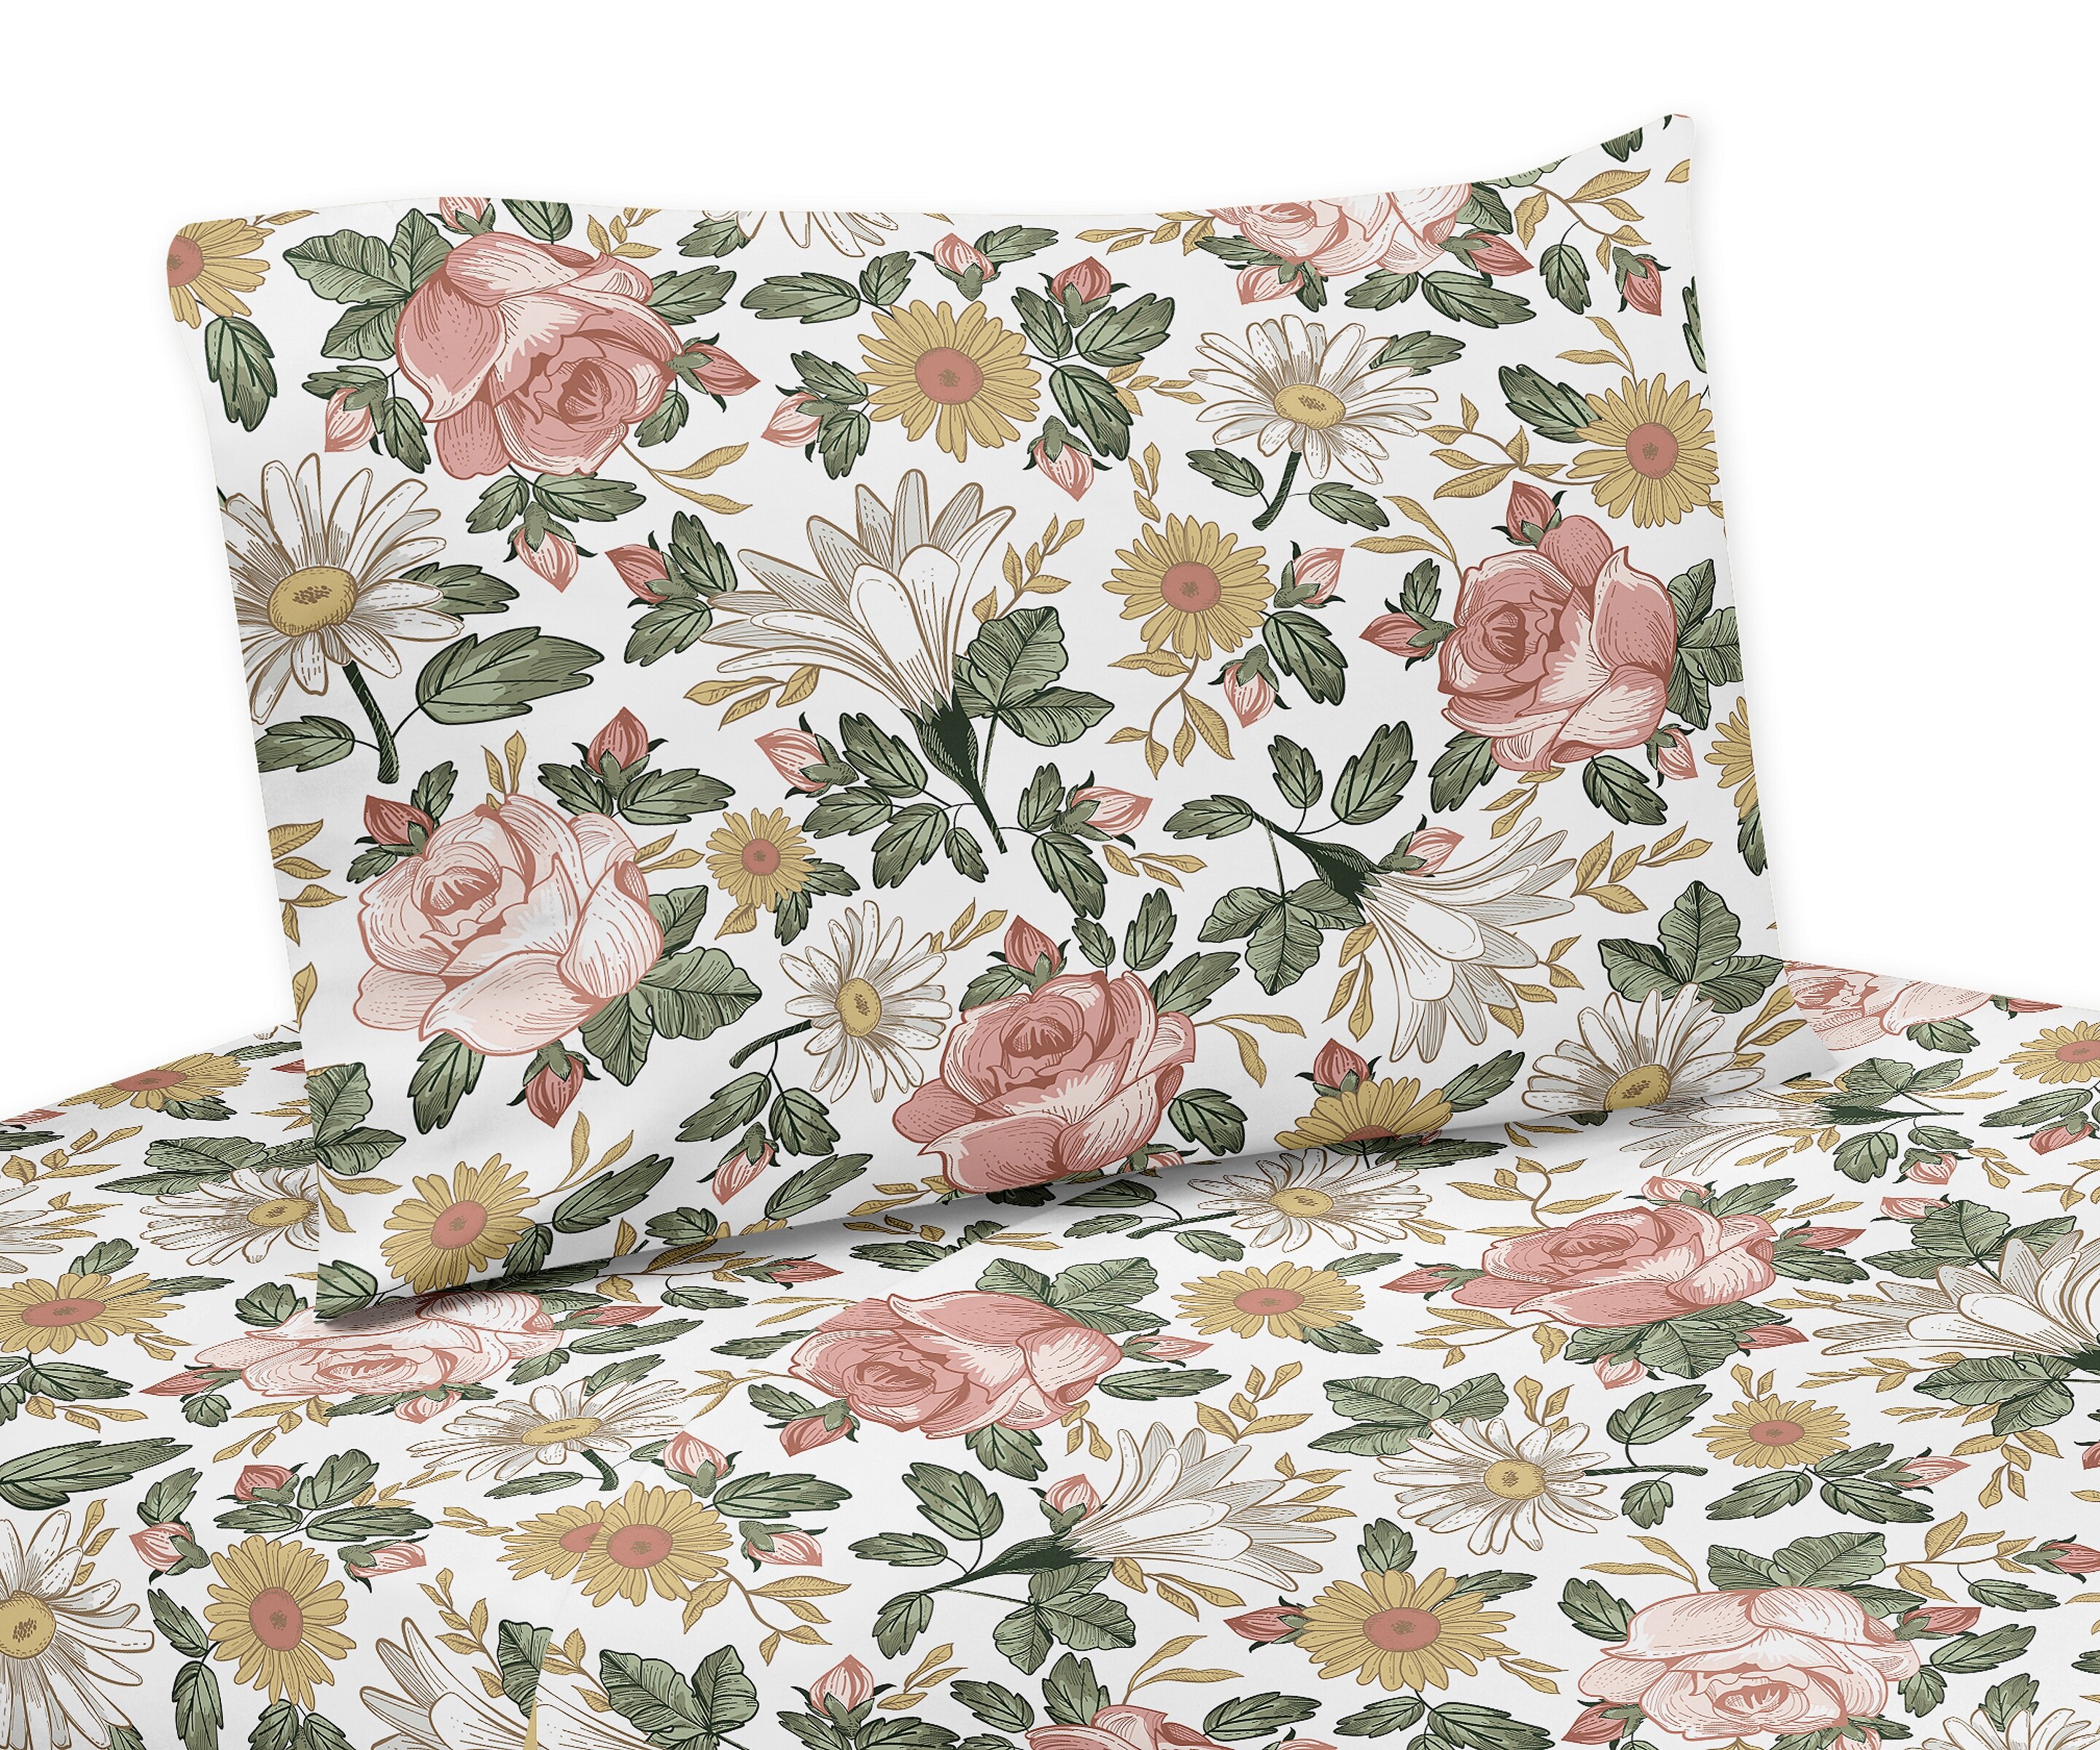 Sweet Jojo Designs Vintage Floral Queen Sheet Set Reviews Wayfair